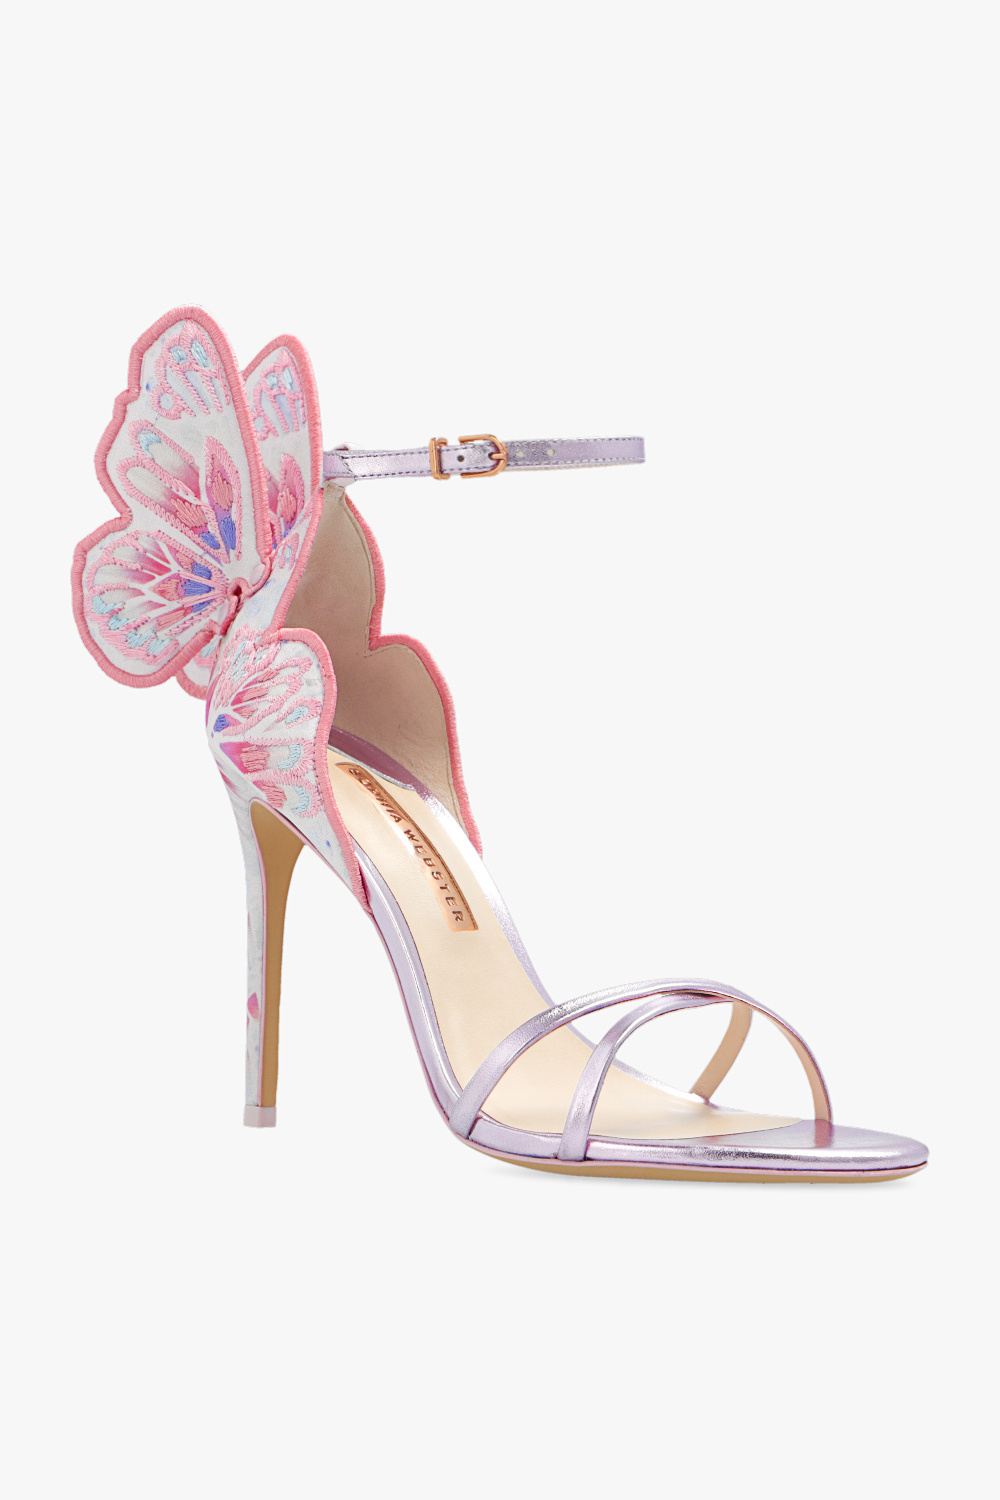 Sophia Webster ‘Chiara’ heeled brand sandals